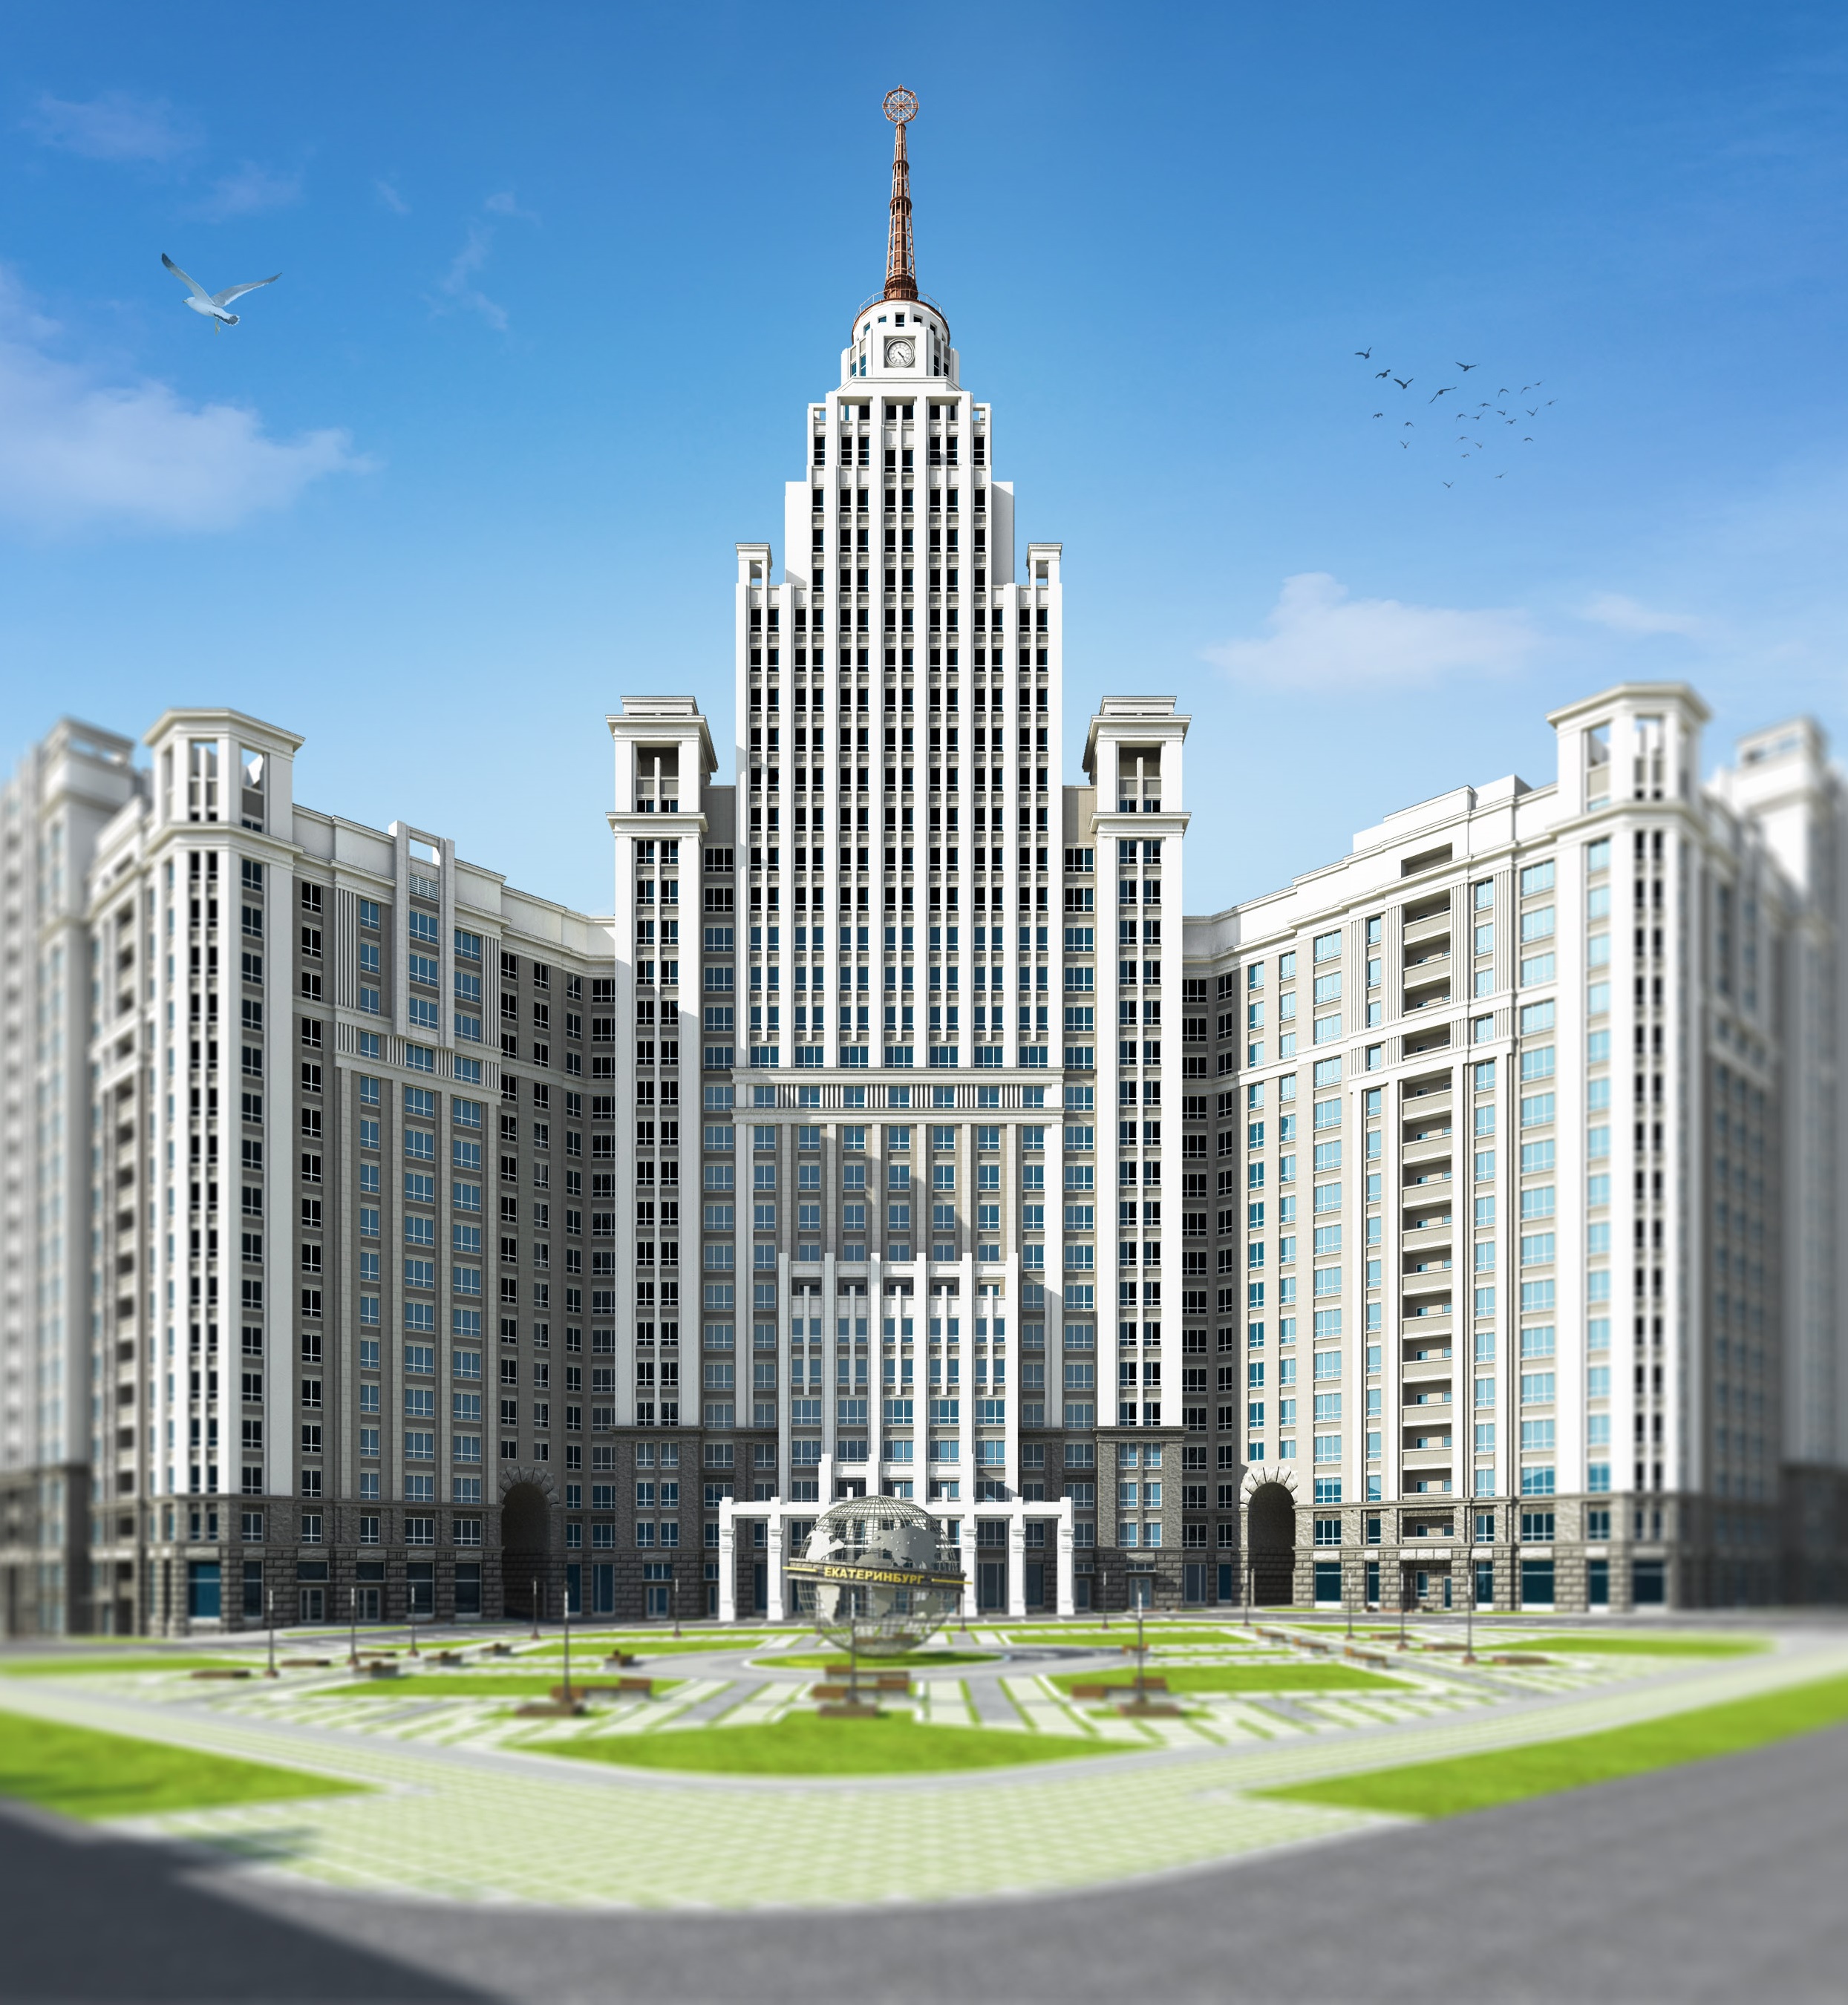 У метро «Чкаловская» построят «Сталинскую высотку» и обустроят сквер